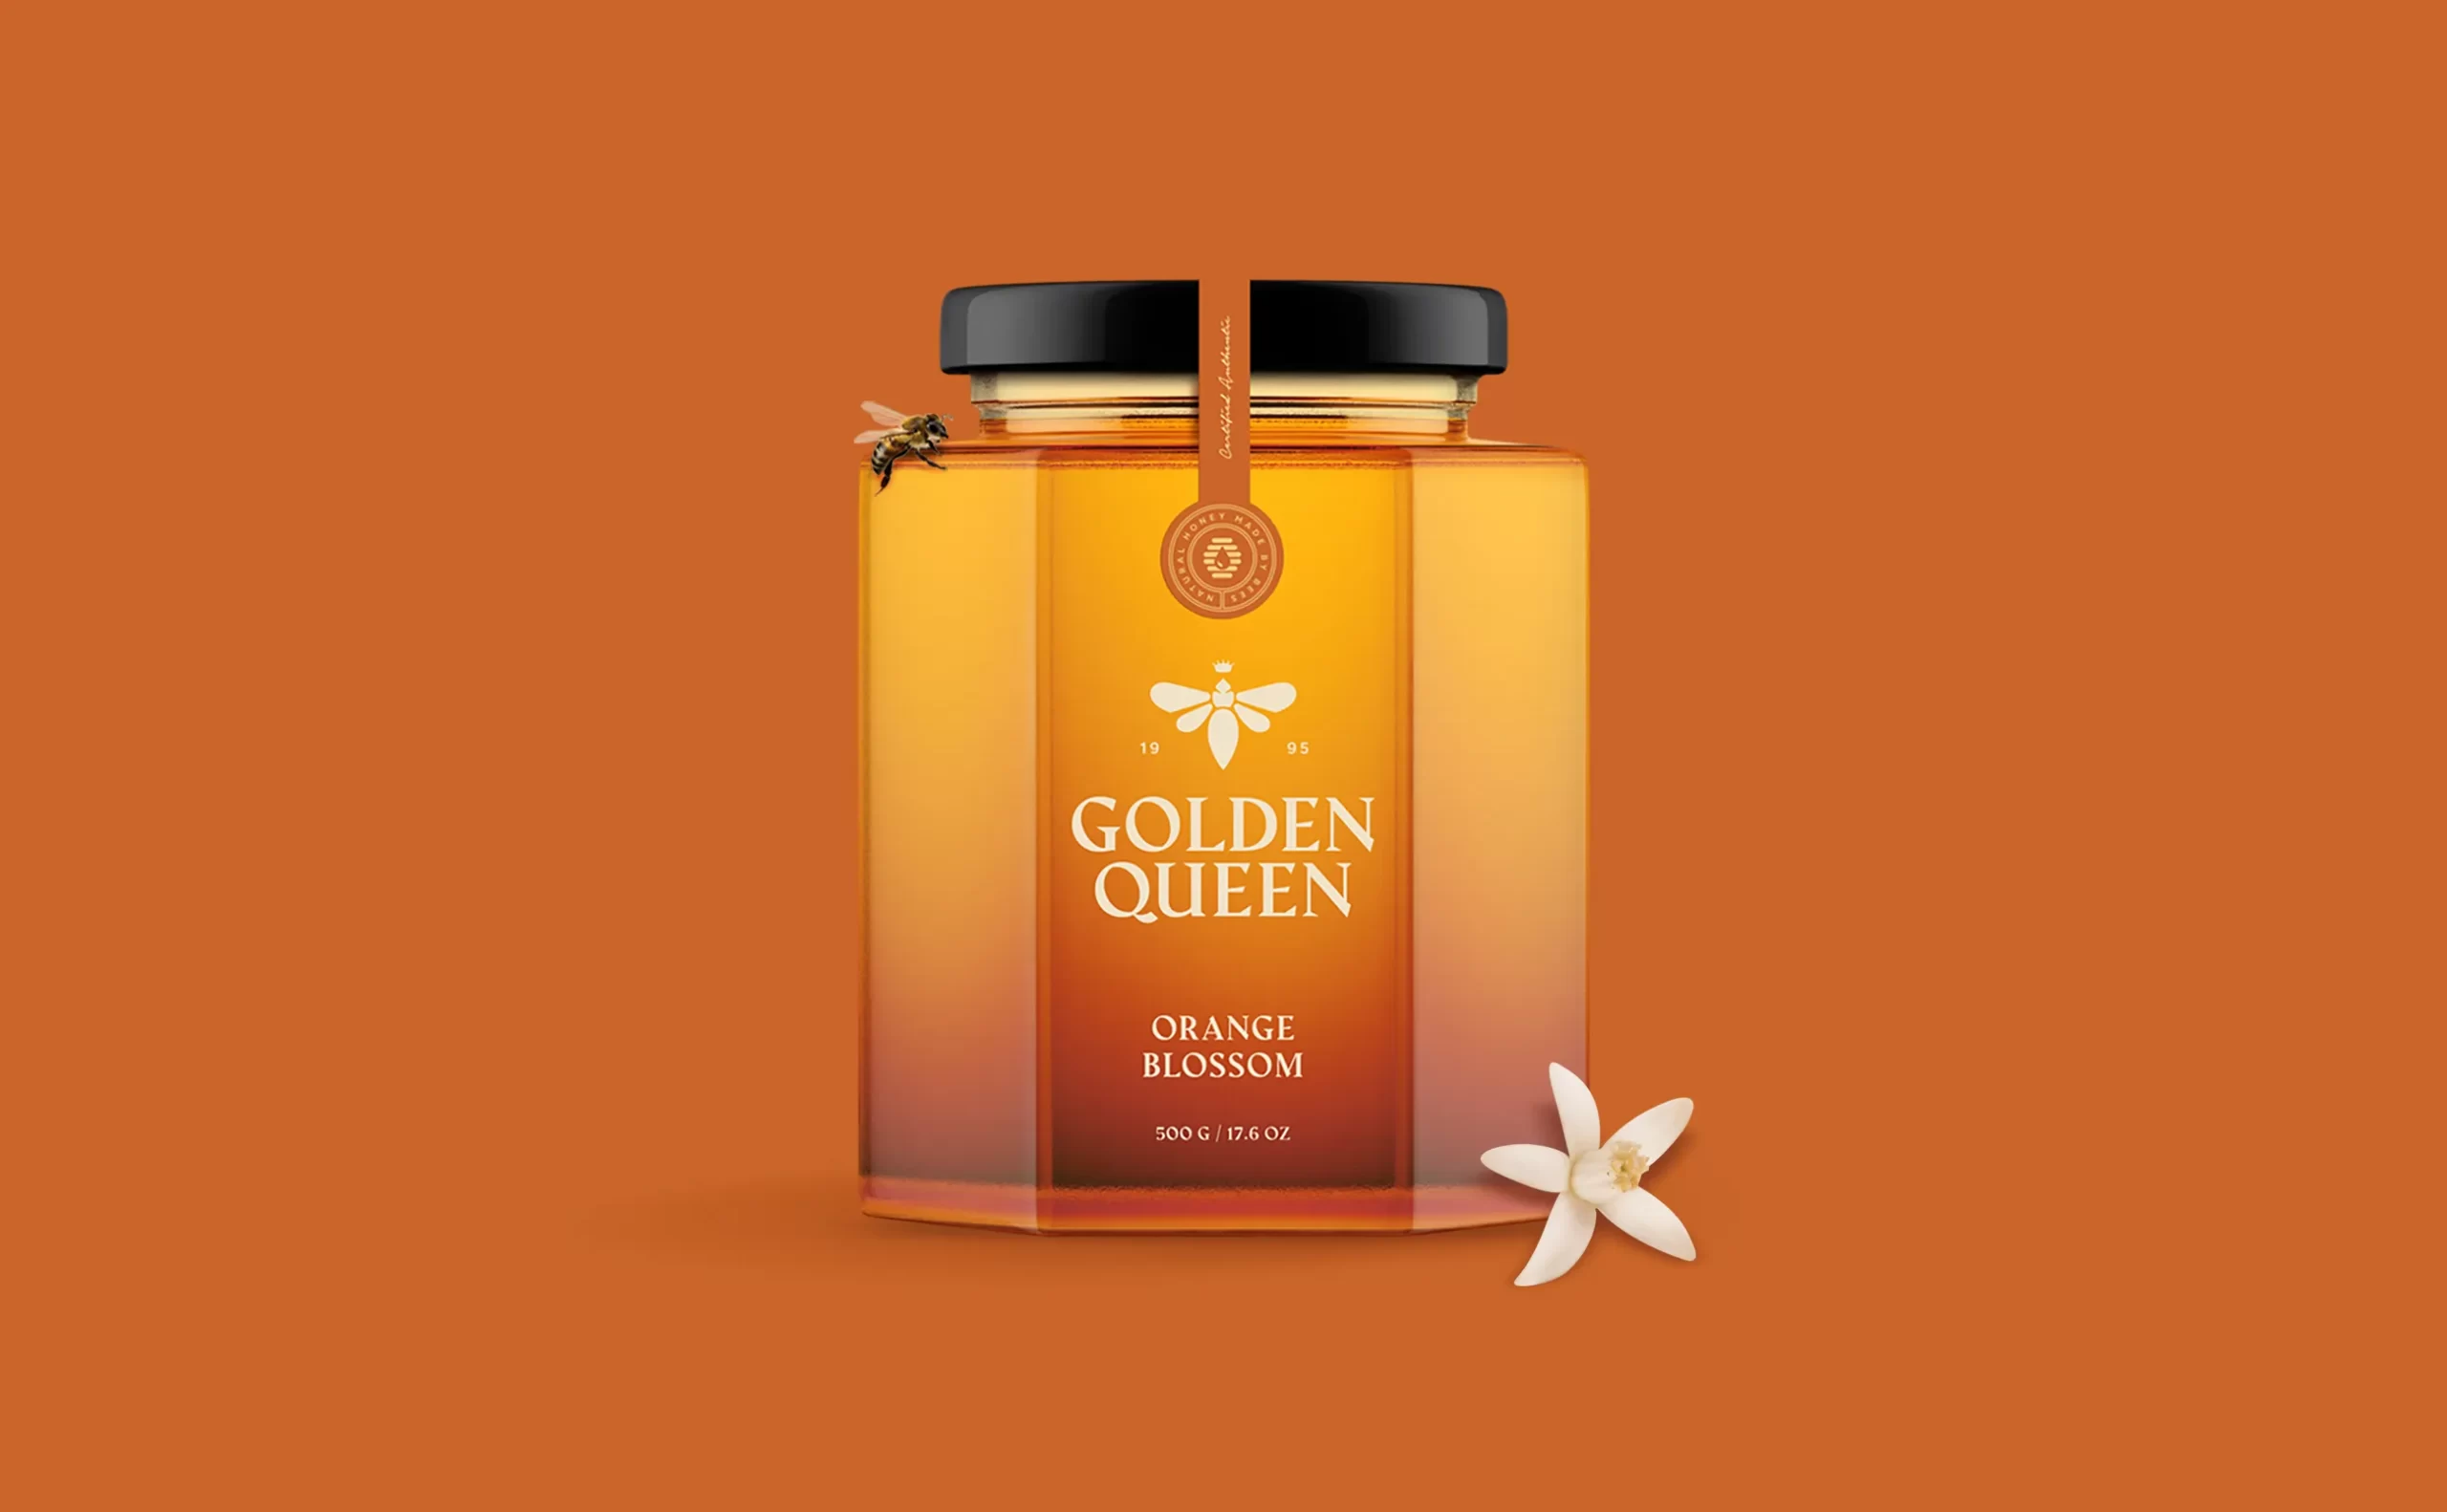 11 Golden Queen